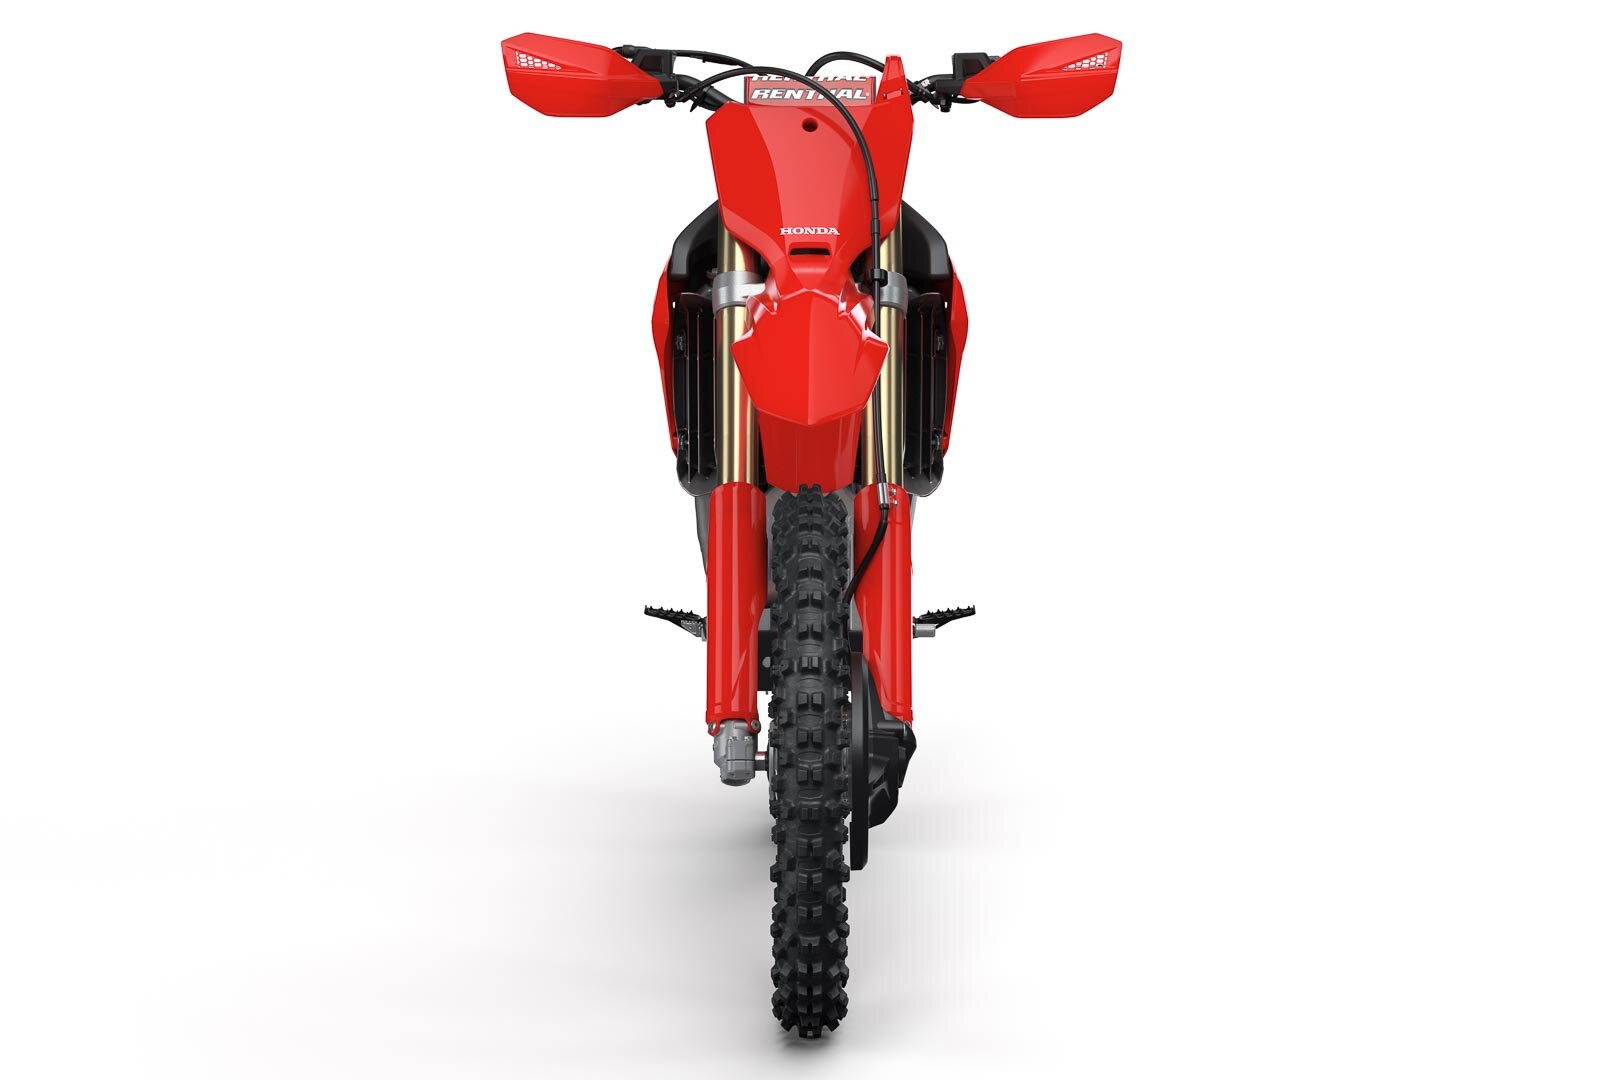 2021-Honda-CRF450RX-First-Look-off-road-cross-country-gncc-racing-motorcycle-1.jpg